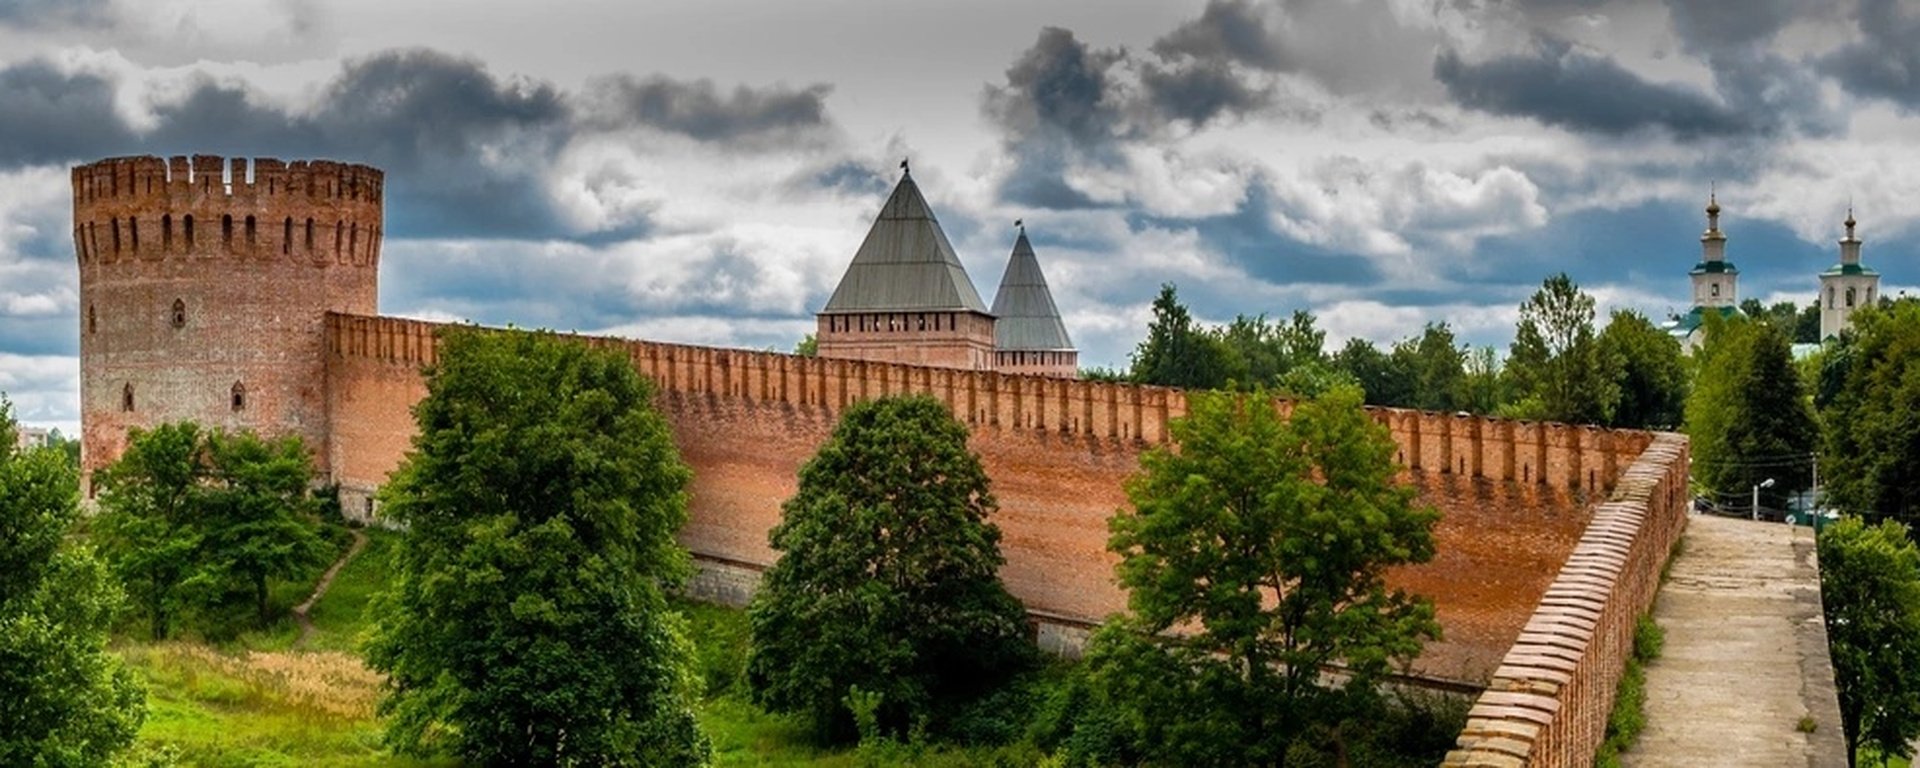 Виды Смоленска с крепостной стеной